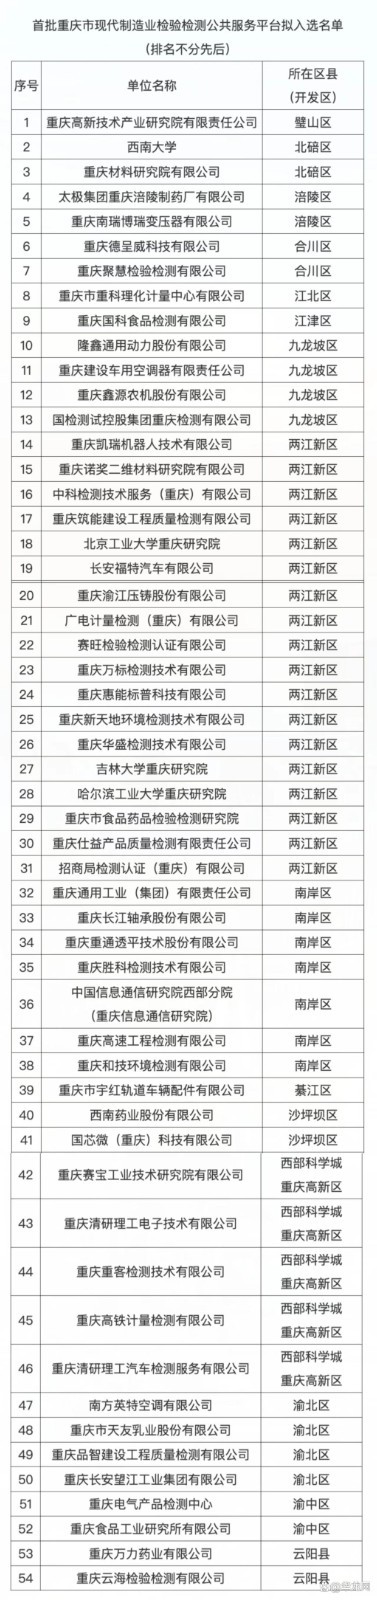 首批重庆市现代制造业检验检测公共服务平台拟入选名单1.jpg